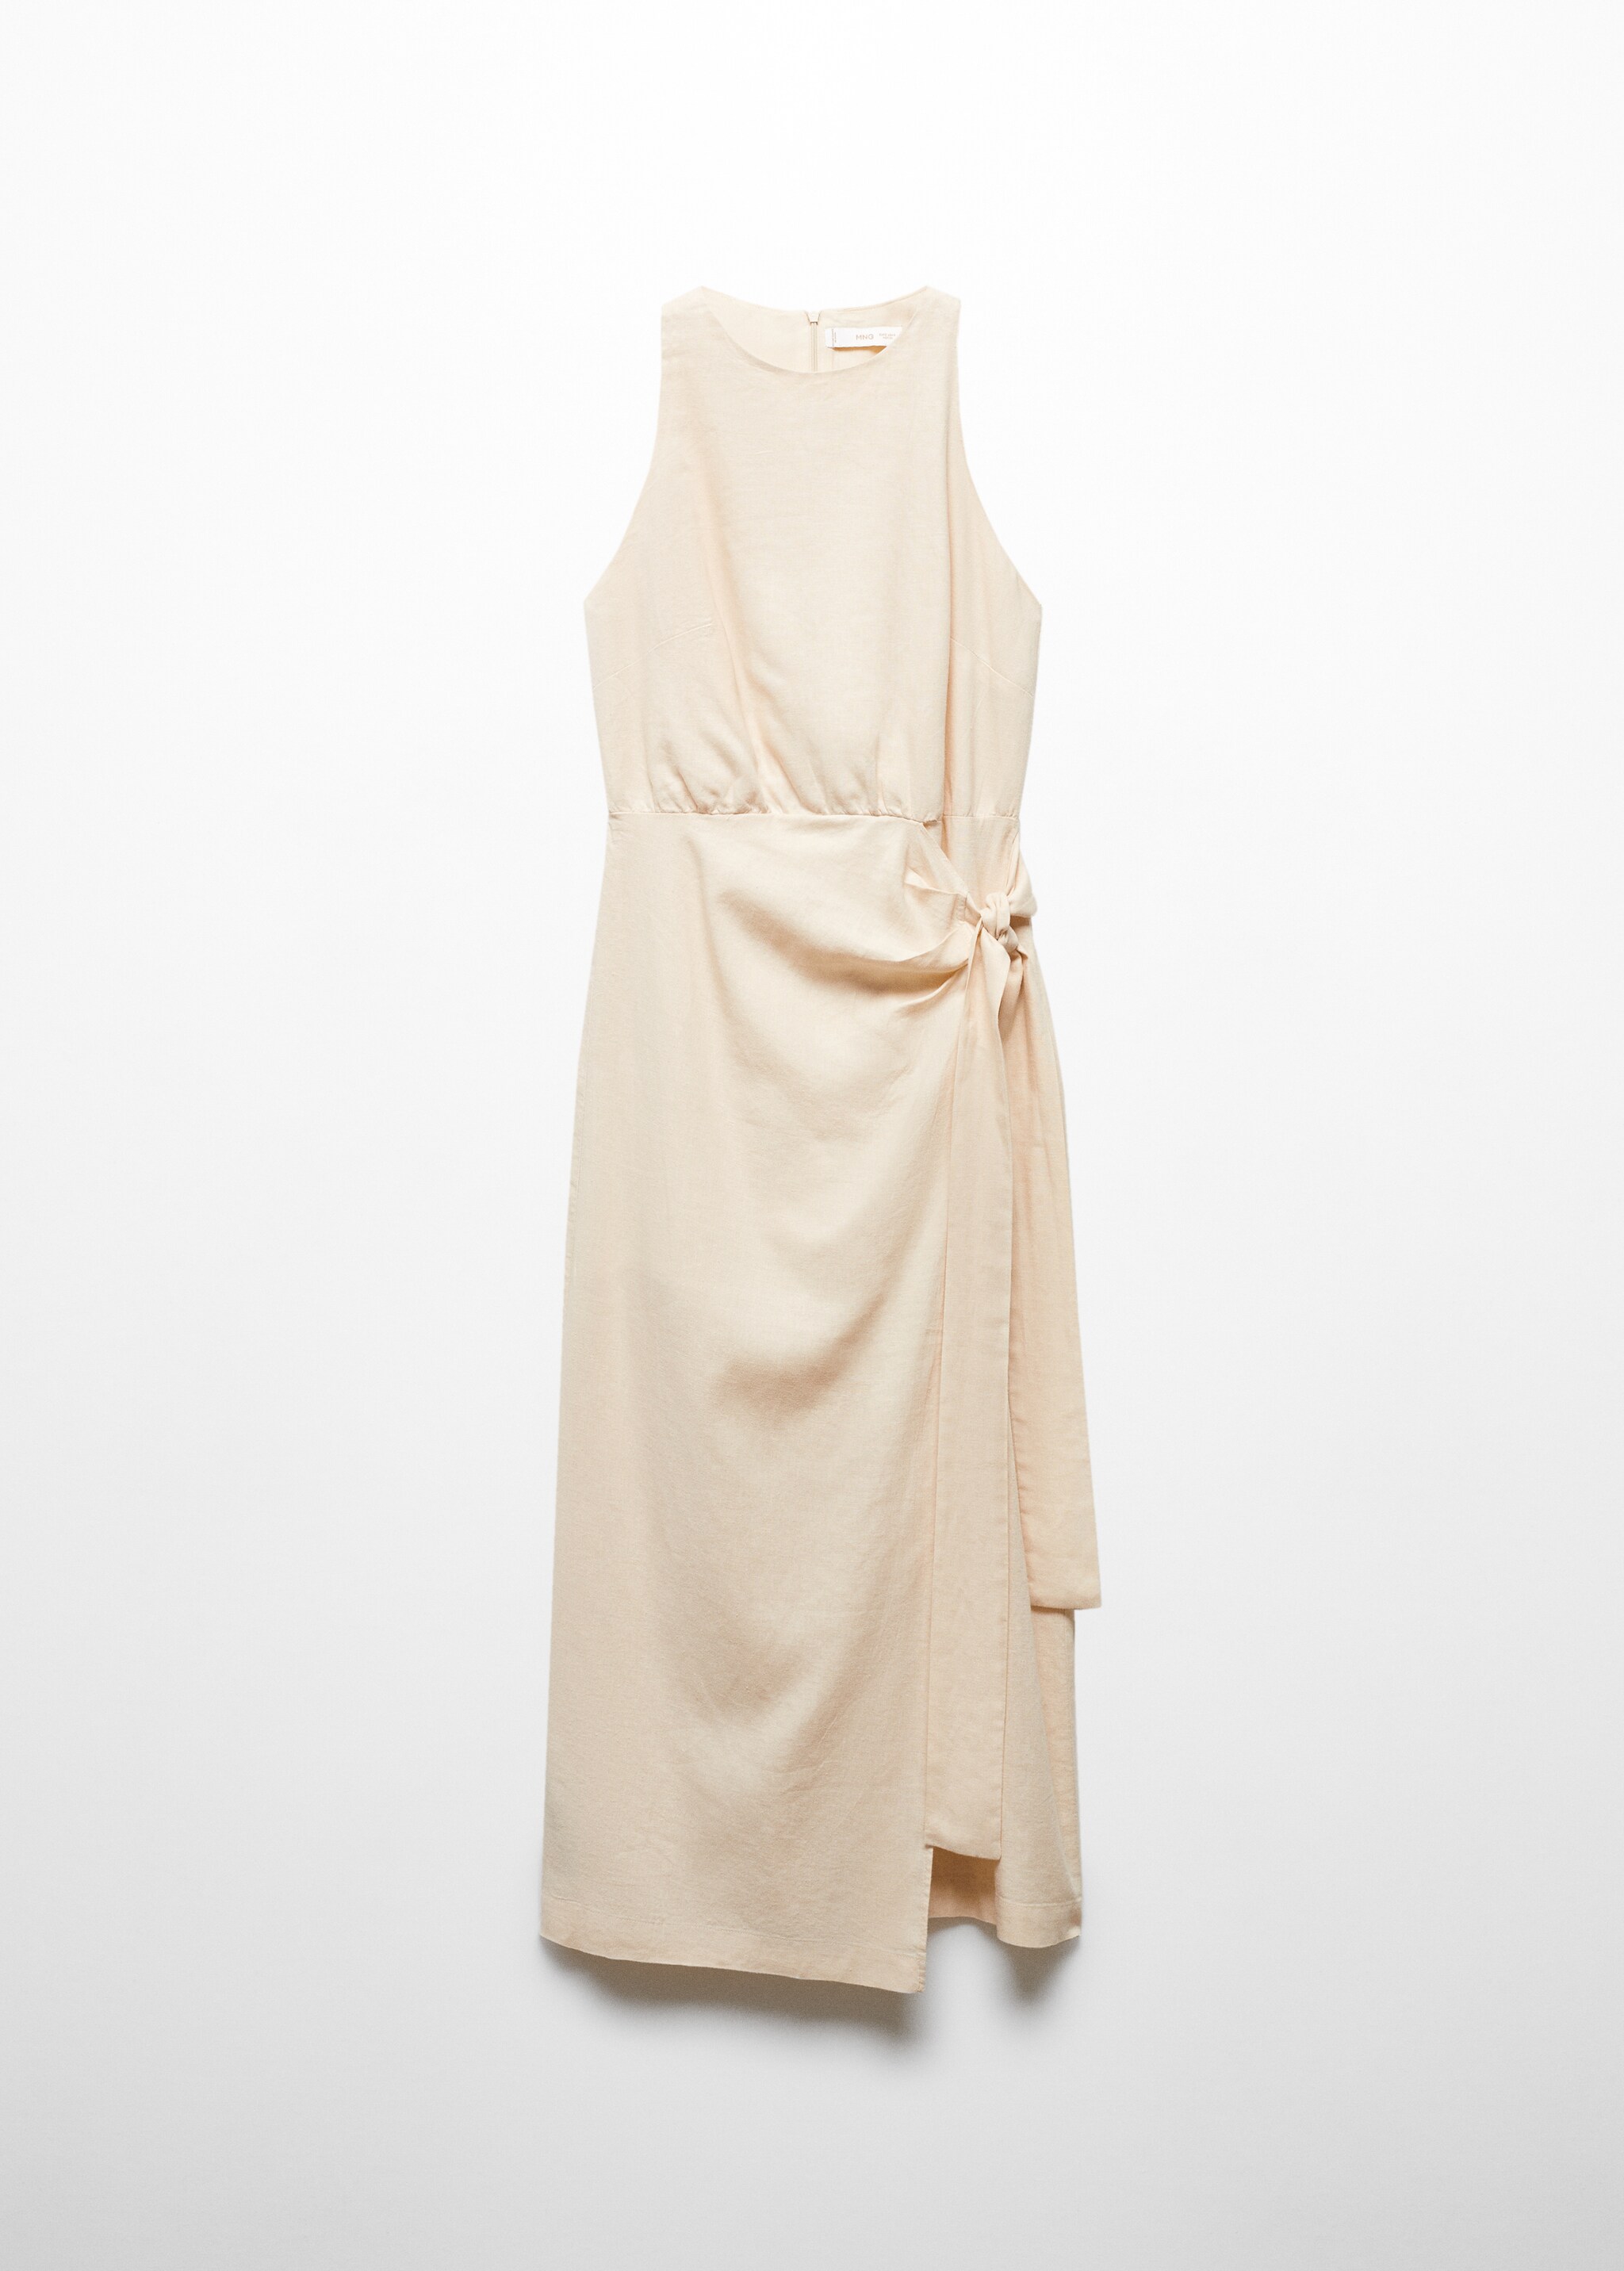 Льняное платье с поясом - Изделие без модели